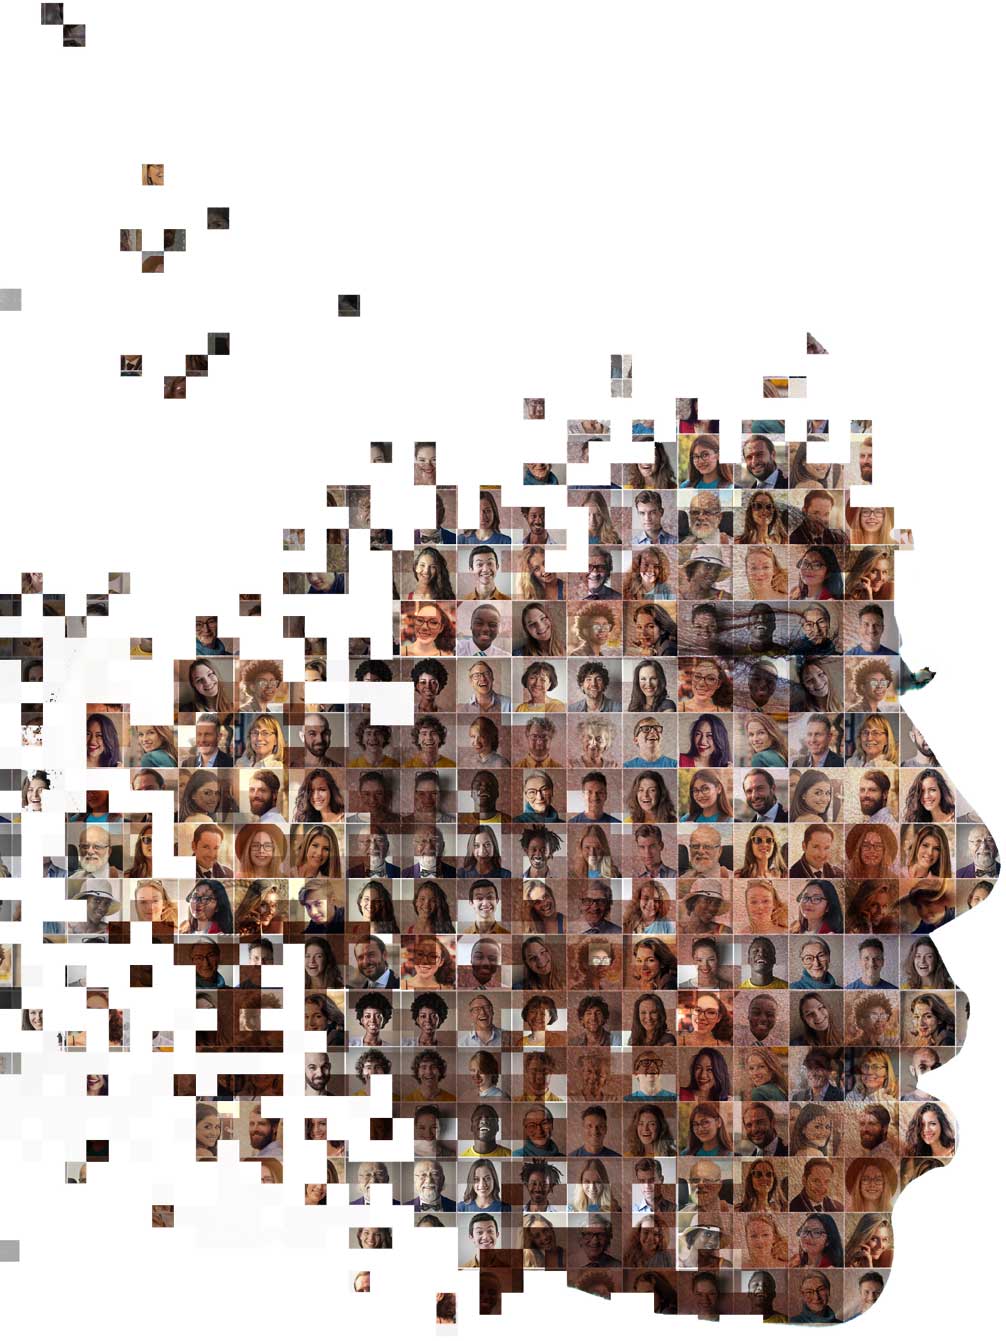 Contorno do perfil do rosto de uma mulher onde aparecem dentro do rosto dela dezenas de outros rostos de pessoas, simbolizando a diversidade humana.